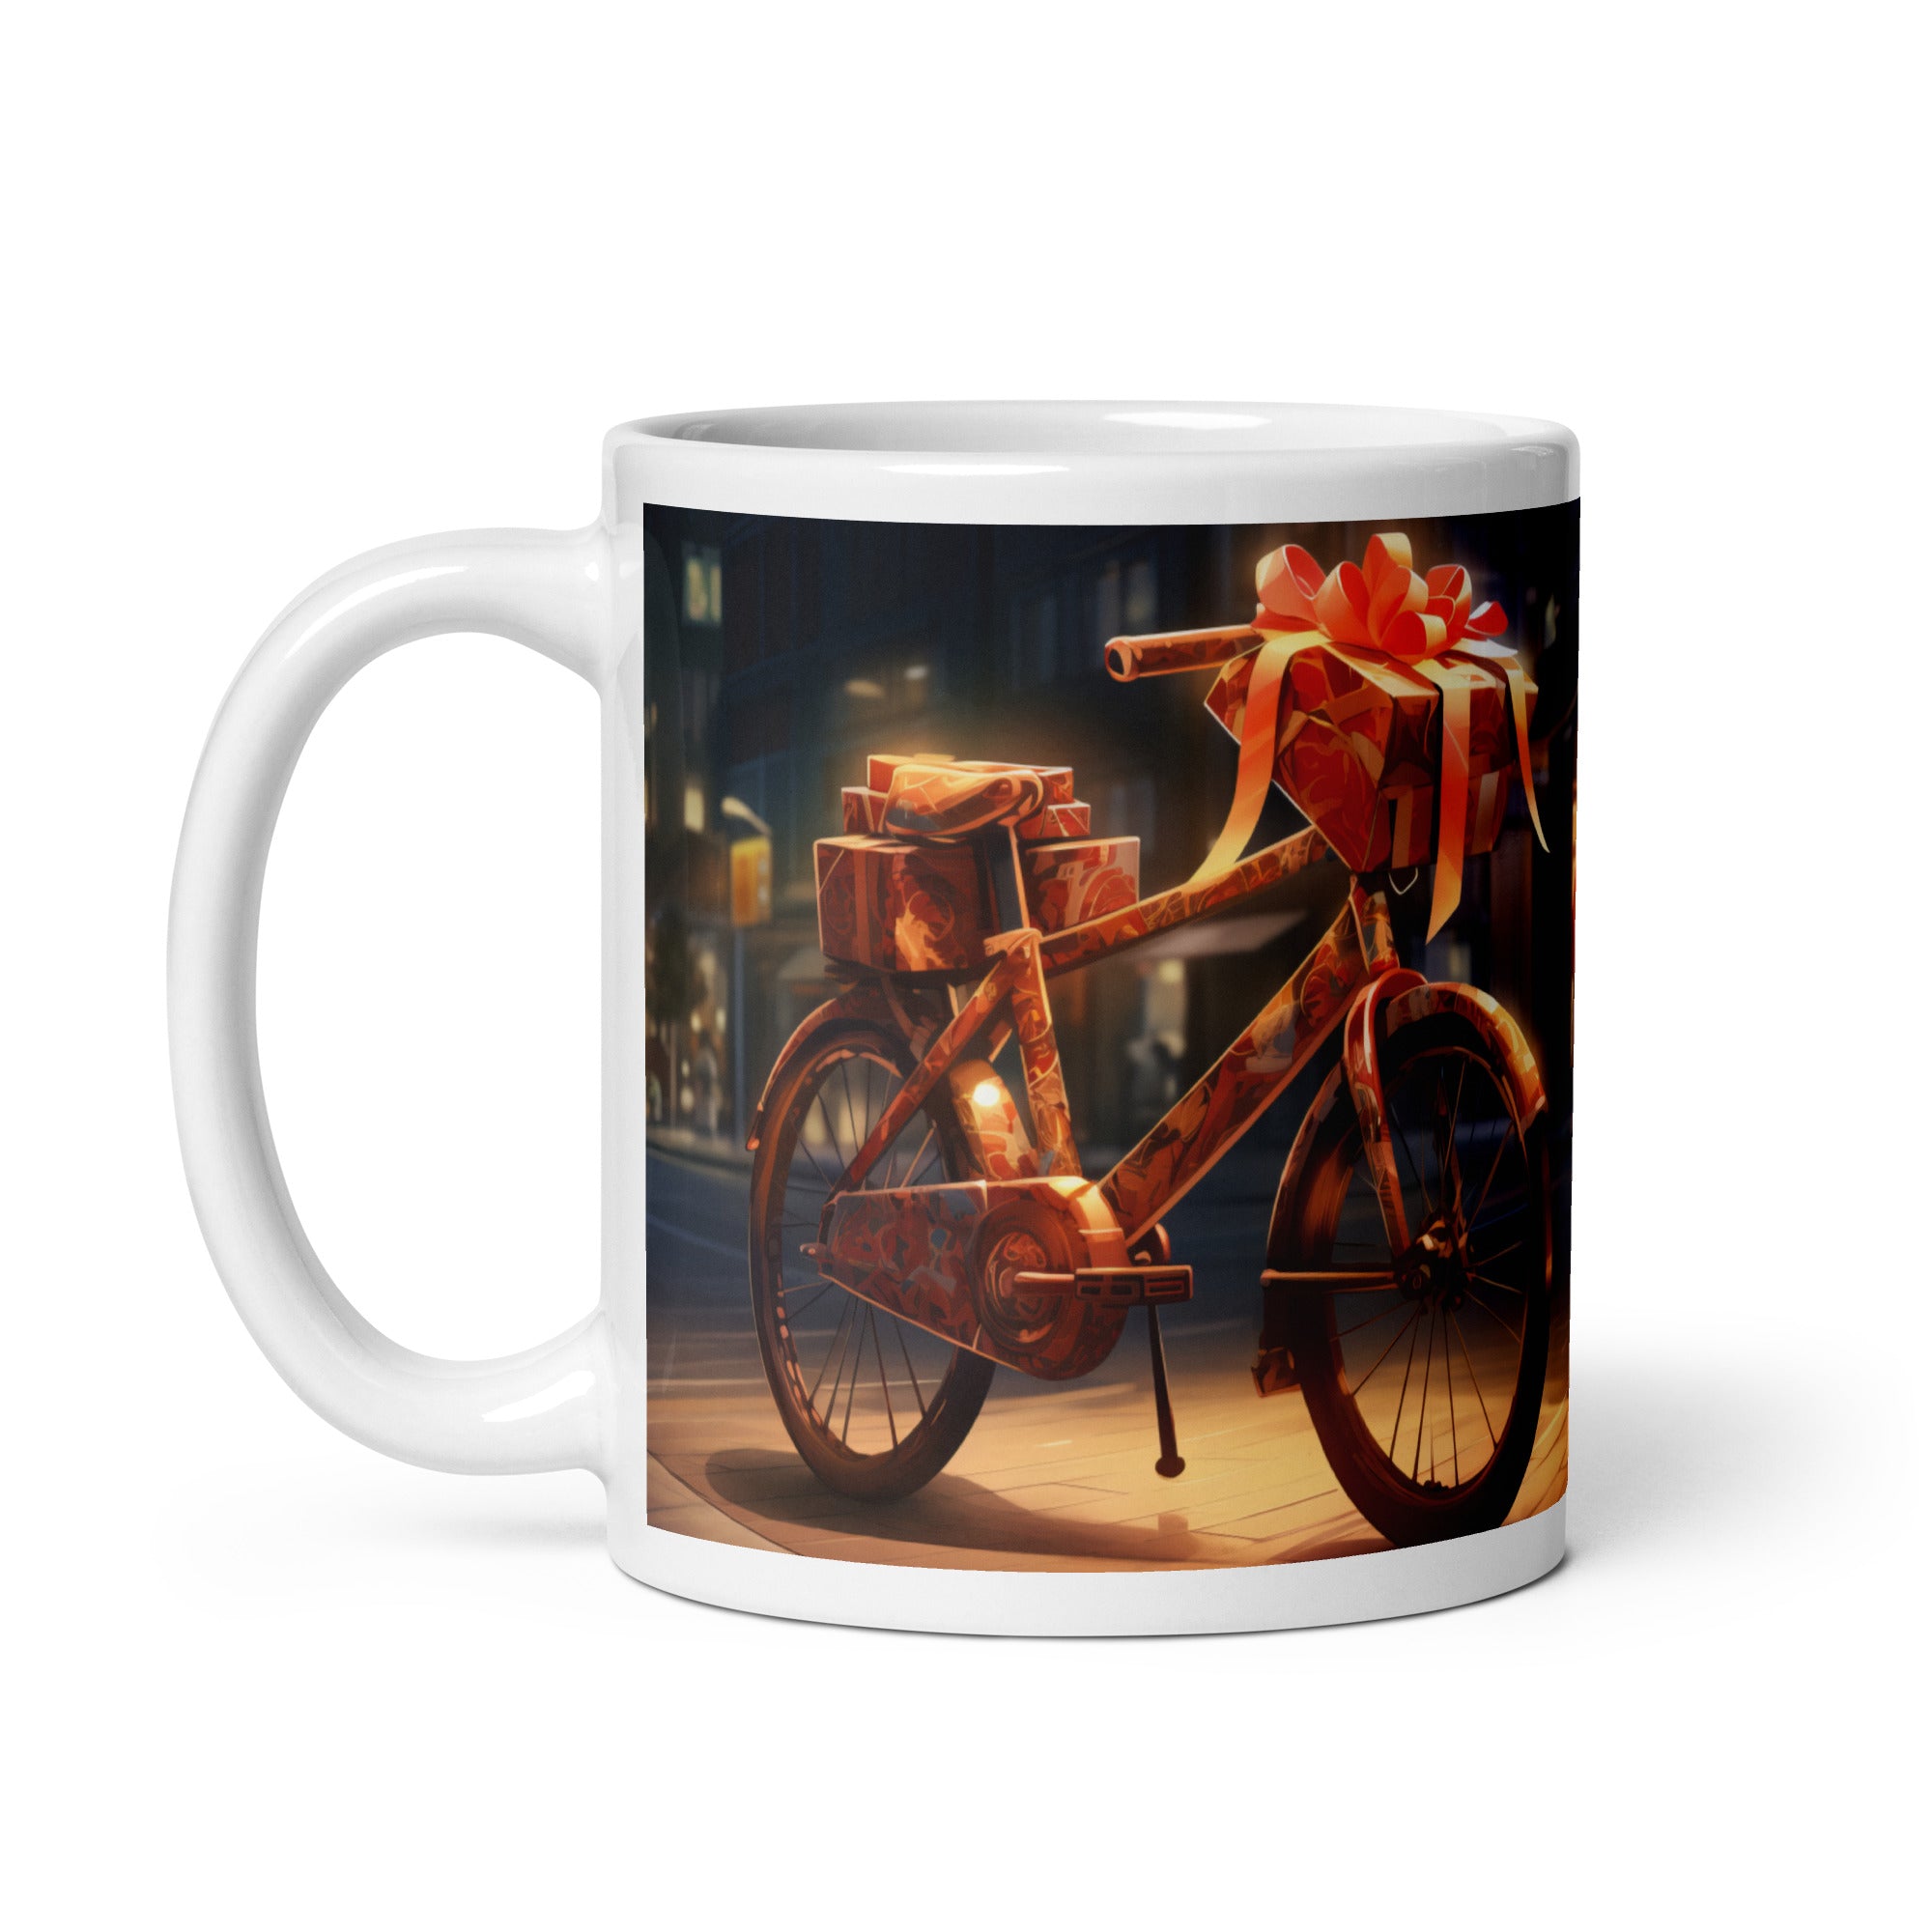 The Gift Of Cycling Mug